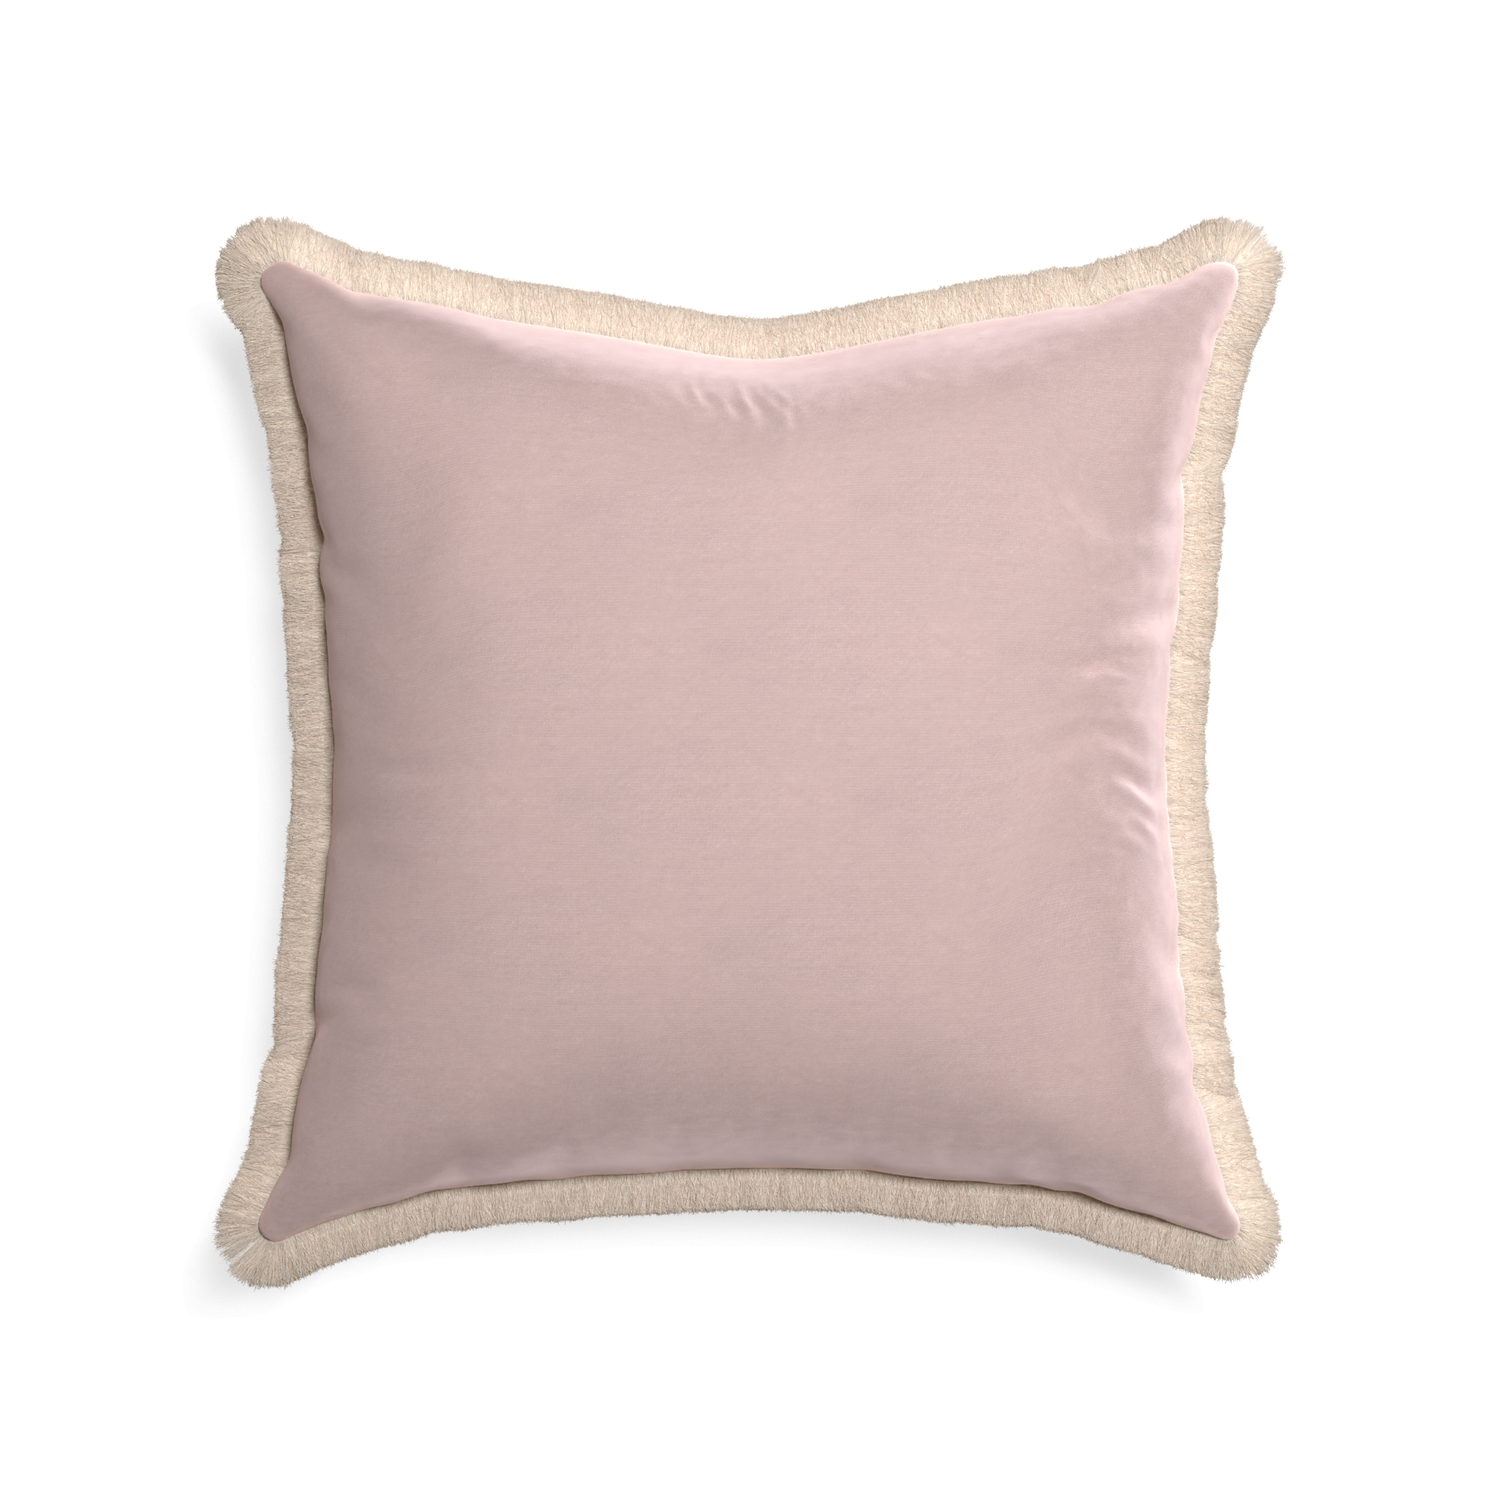 square light pink velvet pillow with cream fringe